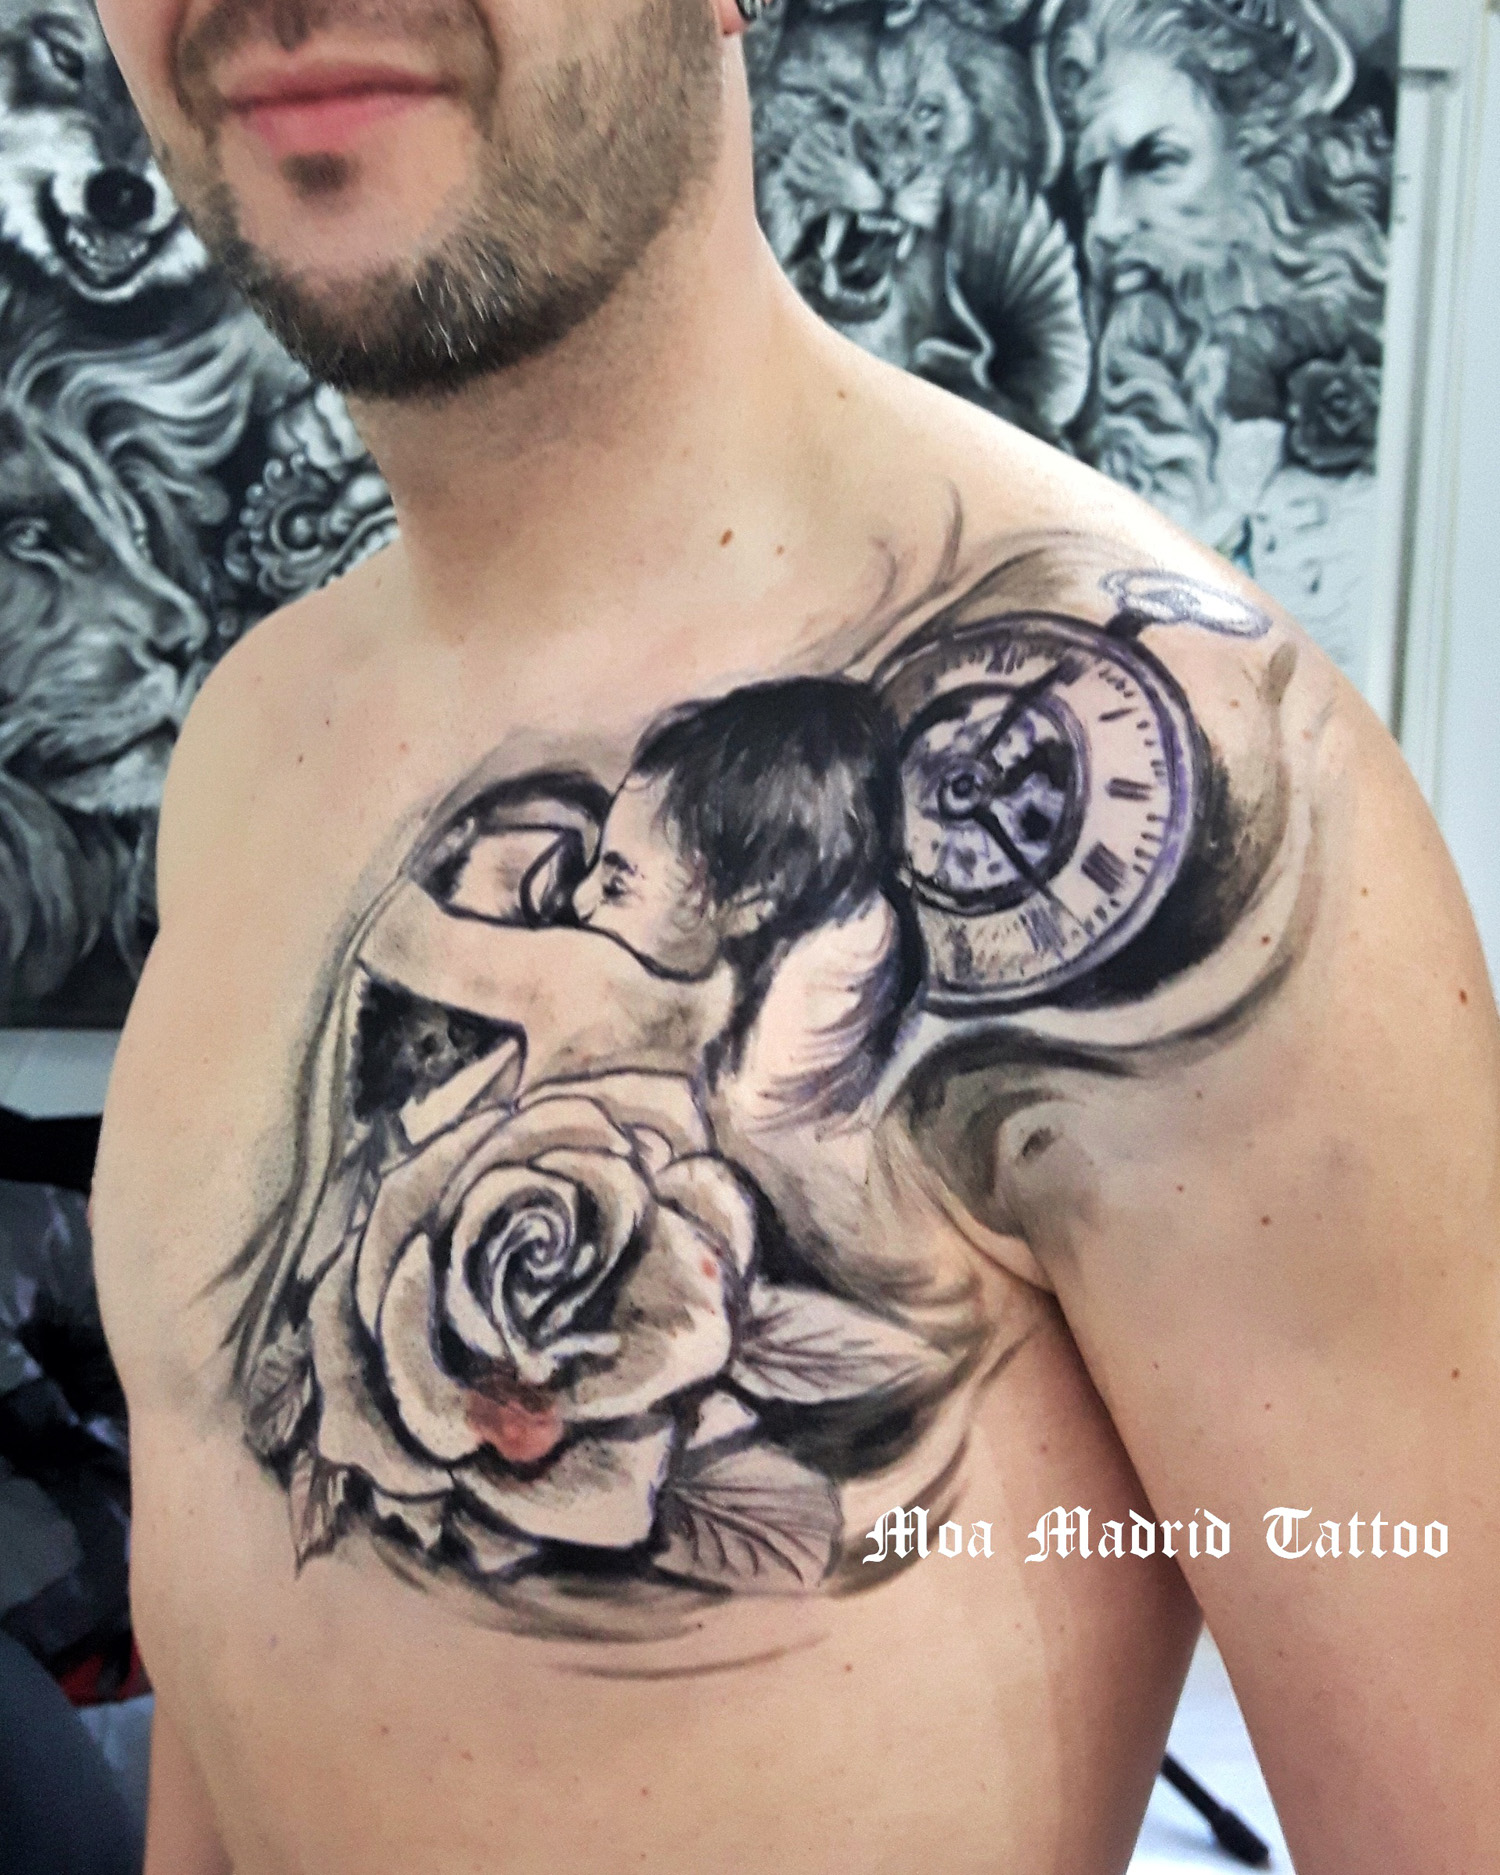 Tatuaje de padre e hija abrazándose hecho en el pectoral | Moa Madrid Tattoo